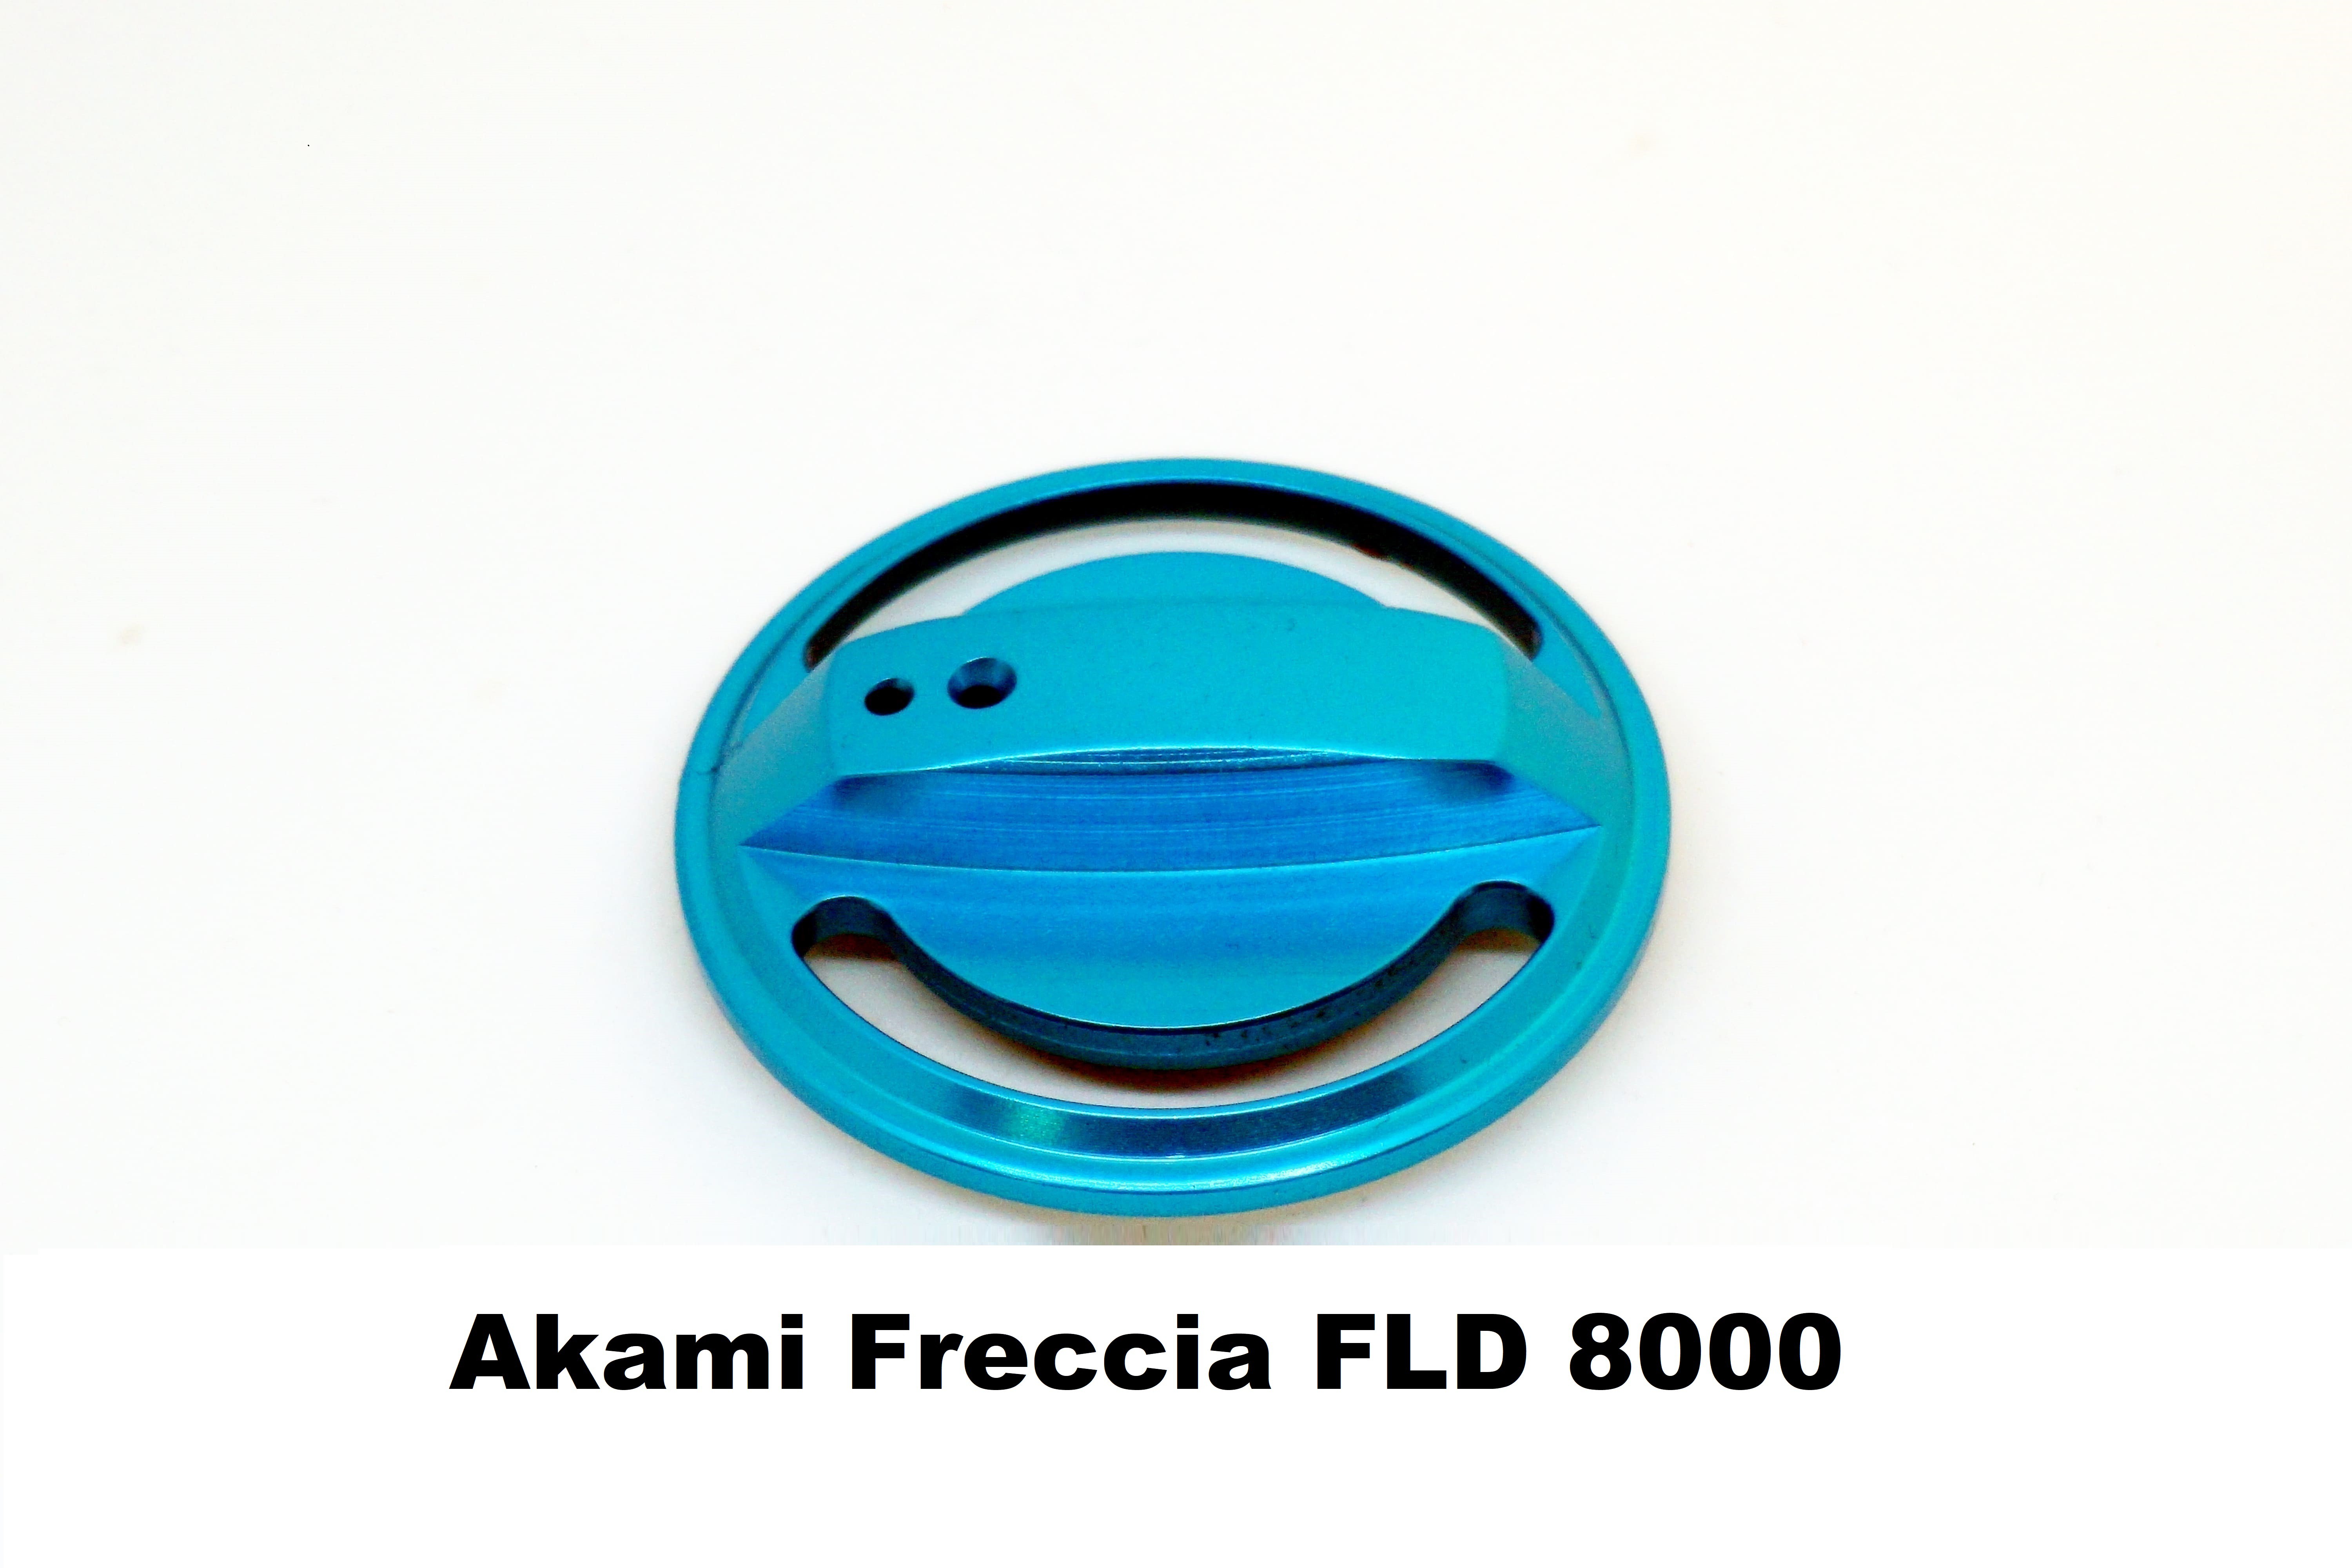 Bouchon de Fren Akami Freccia FLD 8000